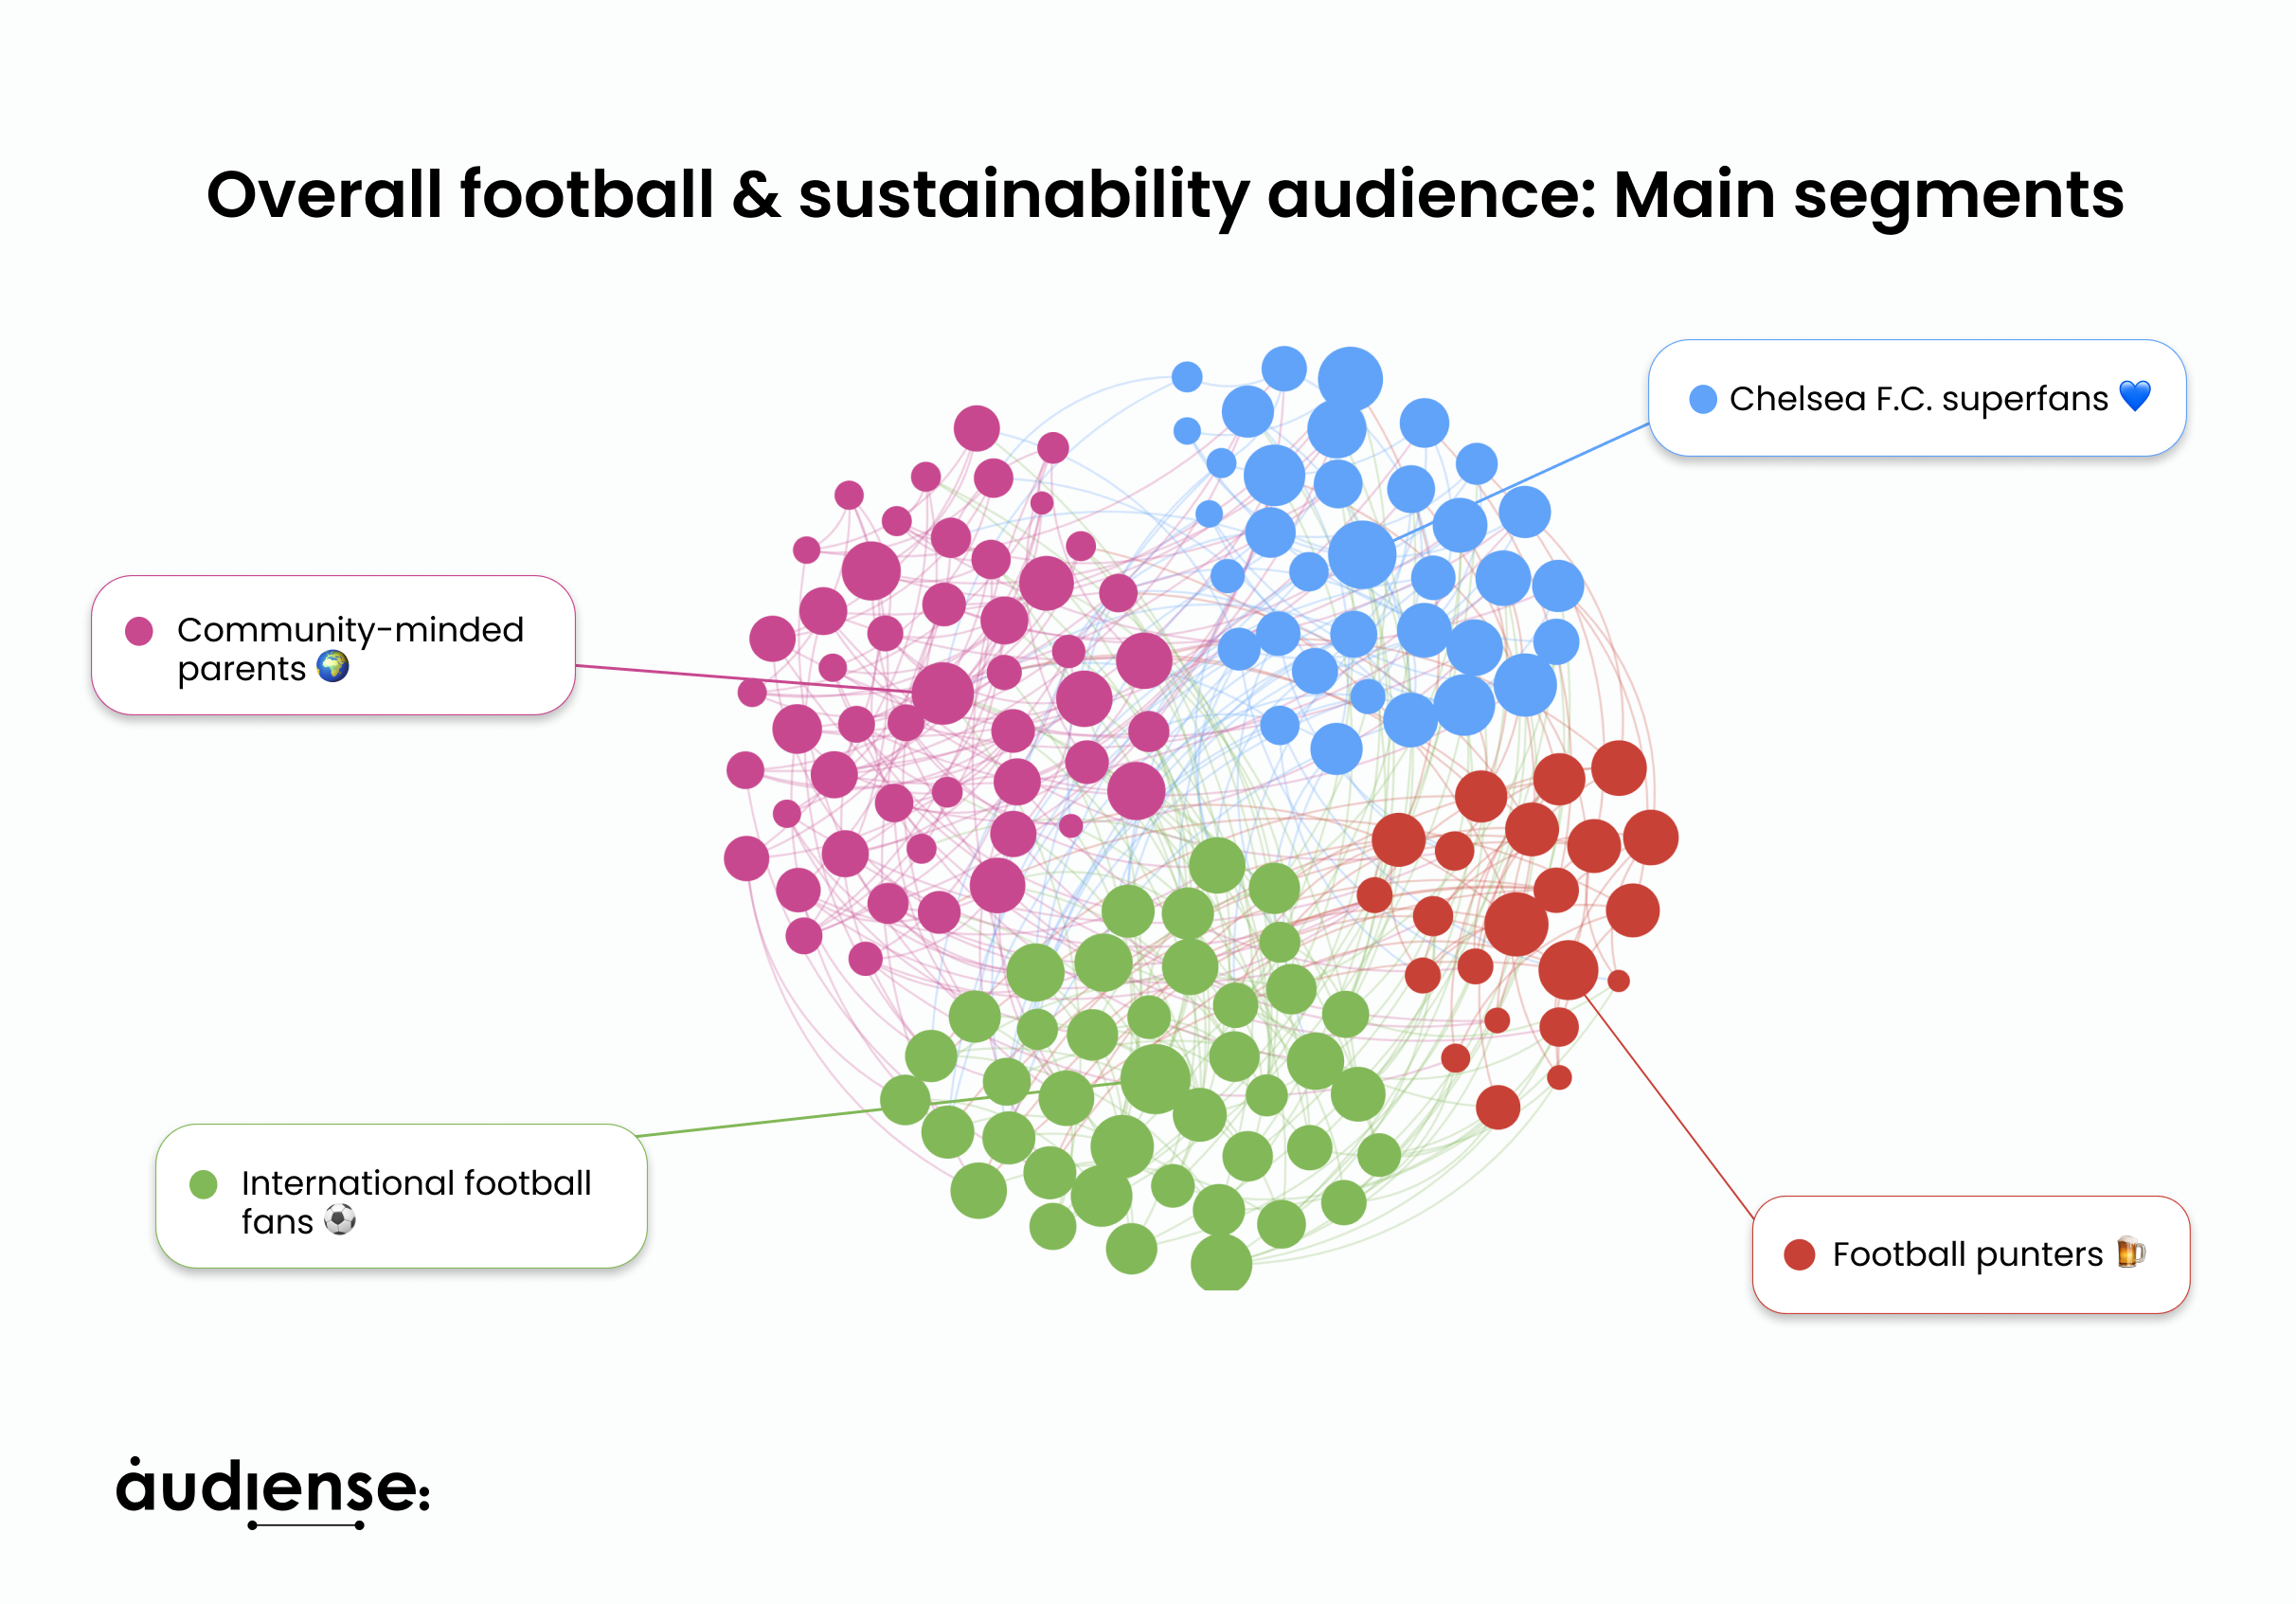 Audiense blog - "L'audience globale du football et du développement durable : Principaux segments